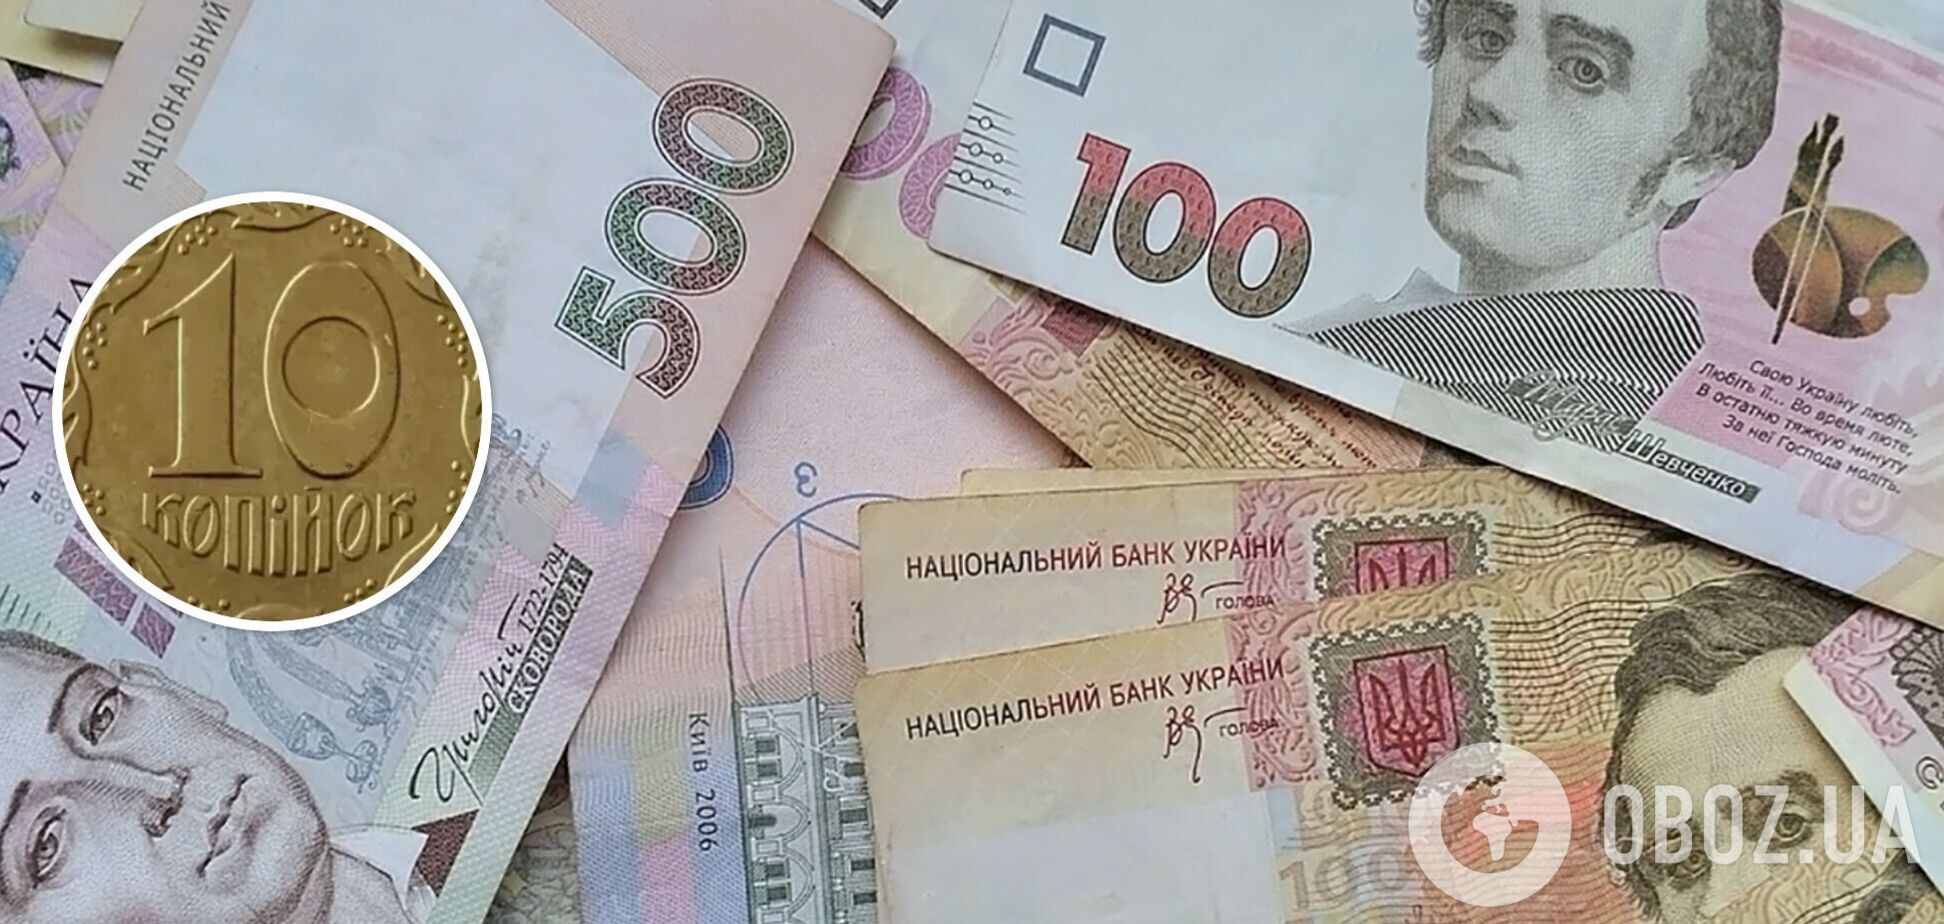 Коллекционеры готовы платить за украинские монеты огромные деньги